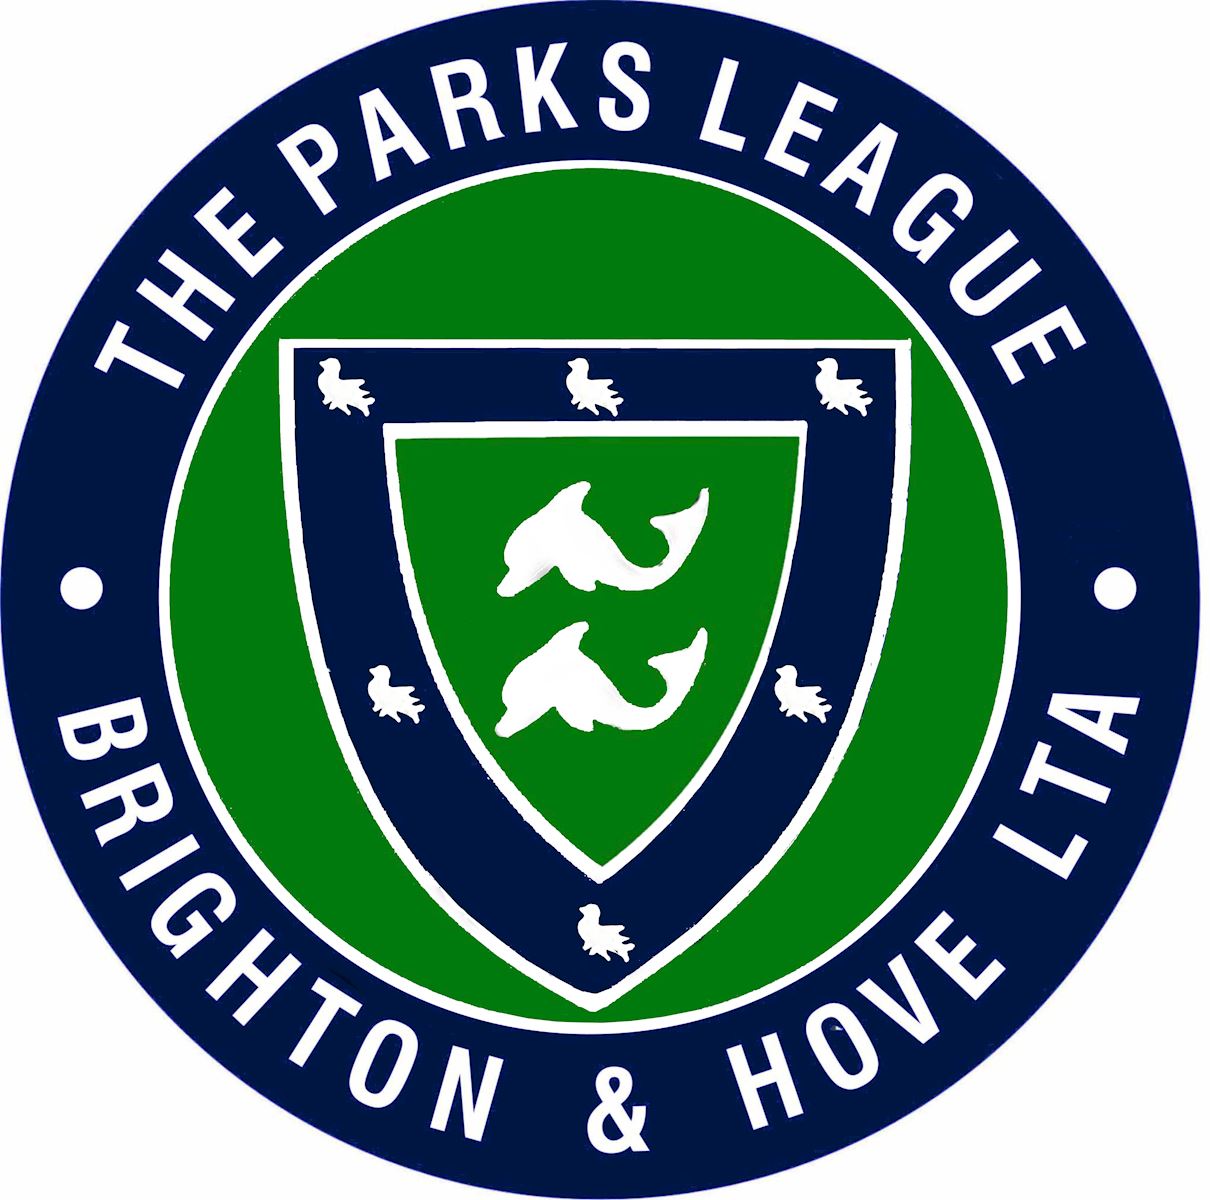 The Parks League